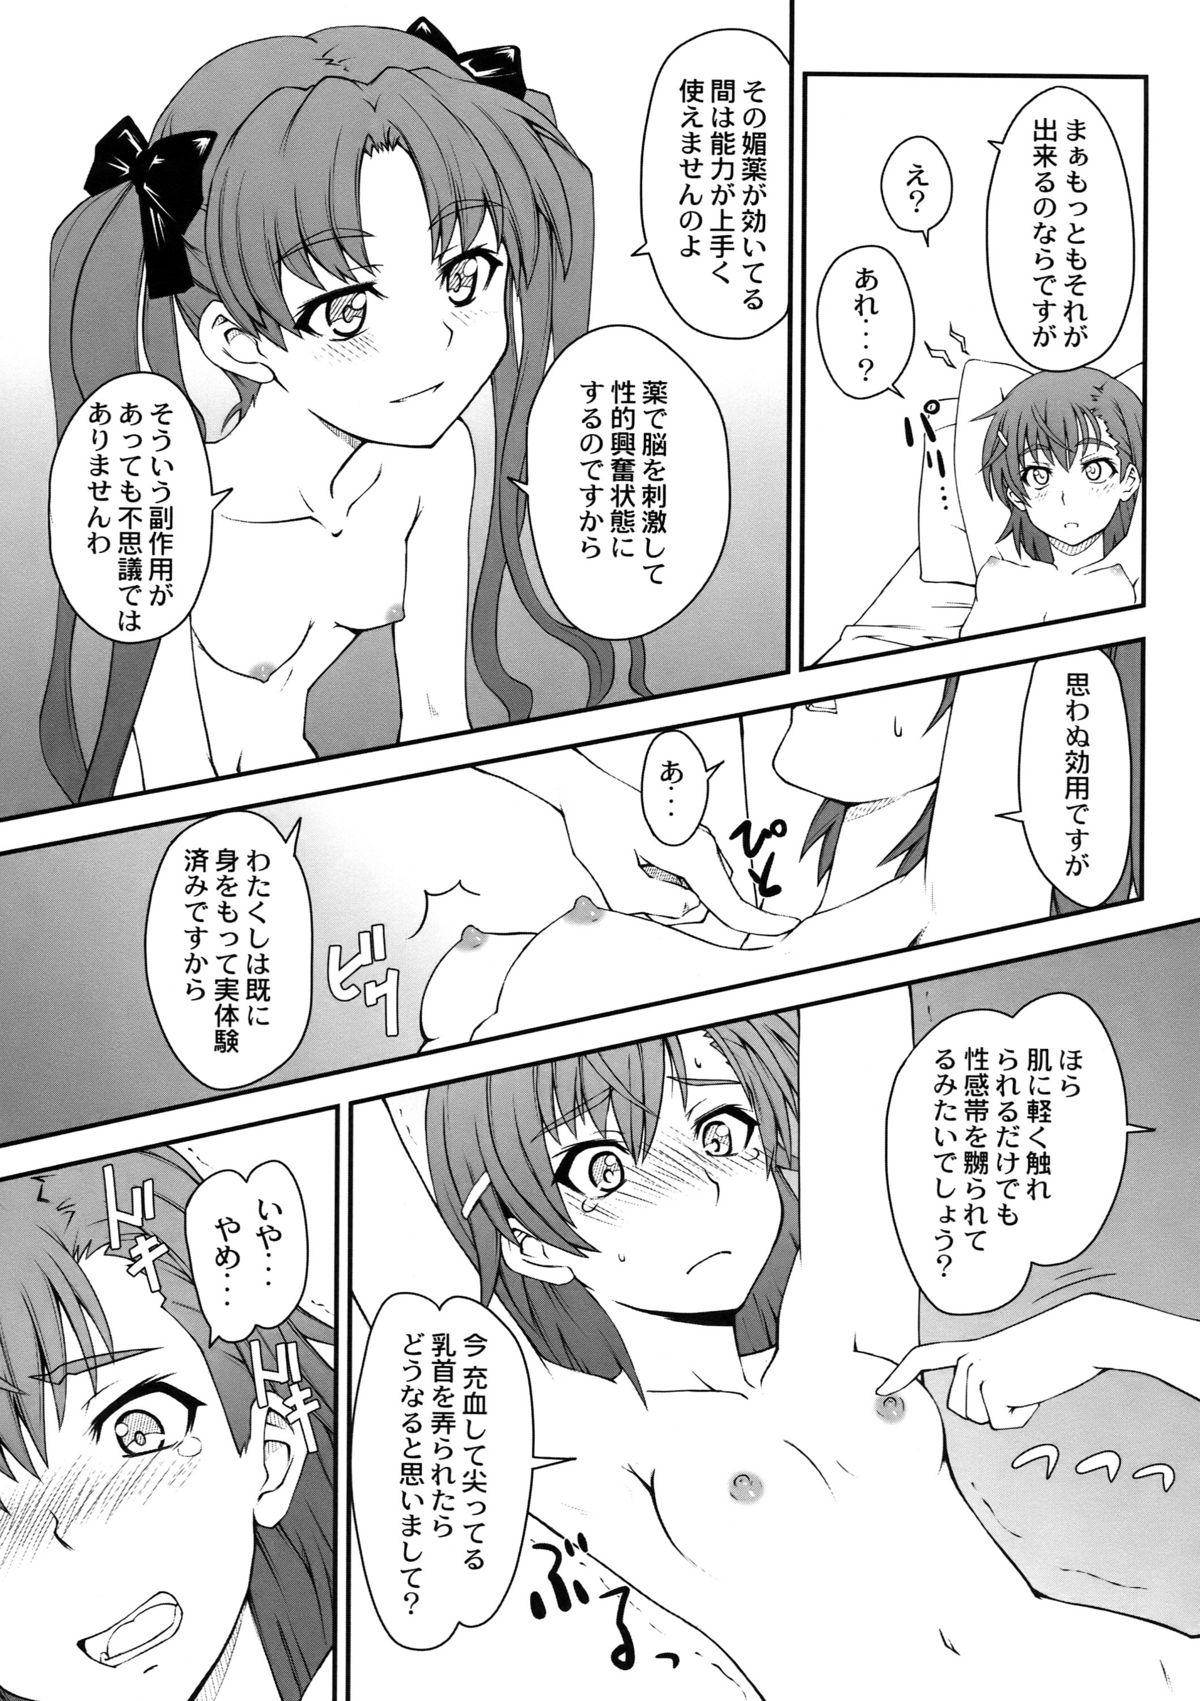 Hogtied Onnanoko Doushi toka Suki dakara! 2 - Toaru kagaku no railgun Hardcore - Page 11